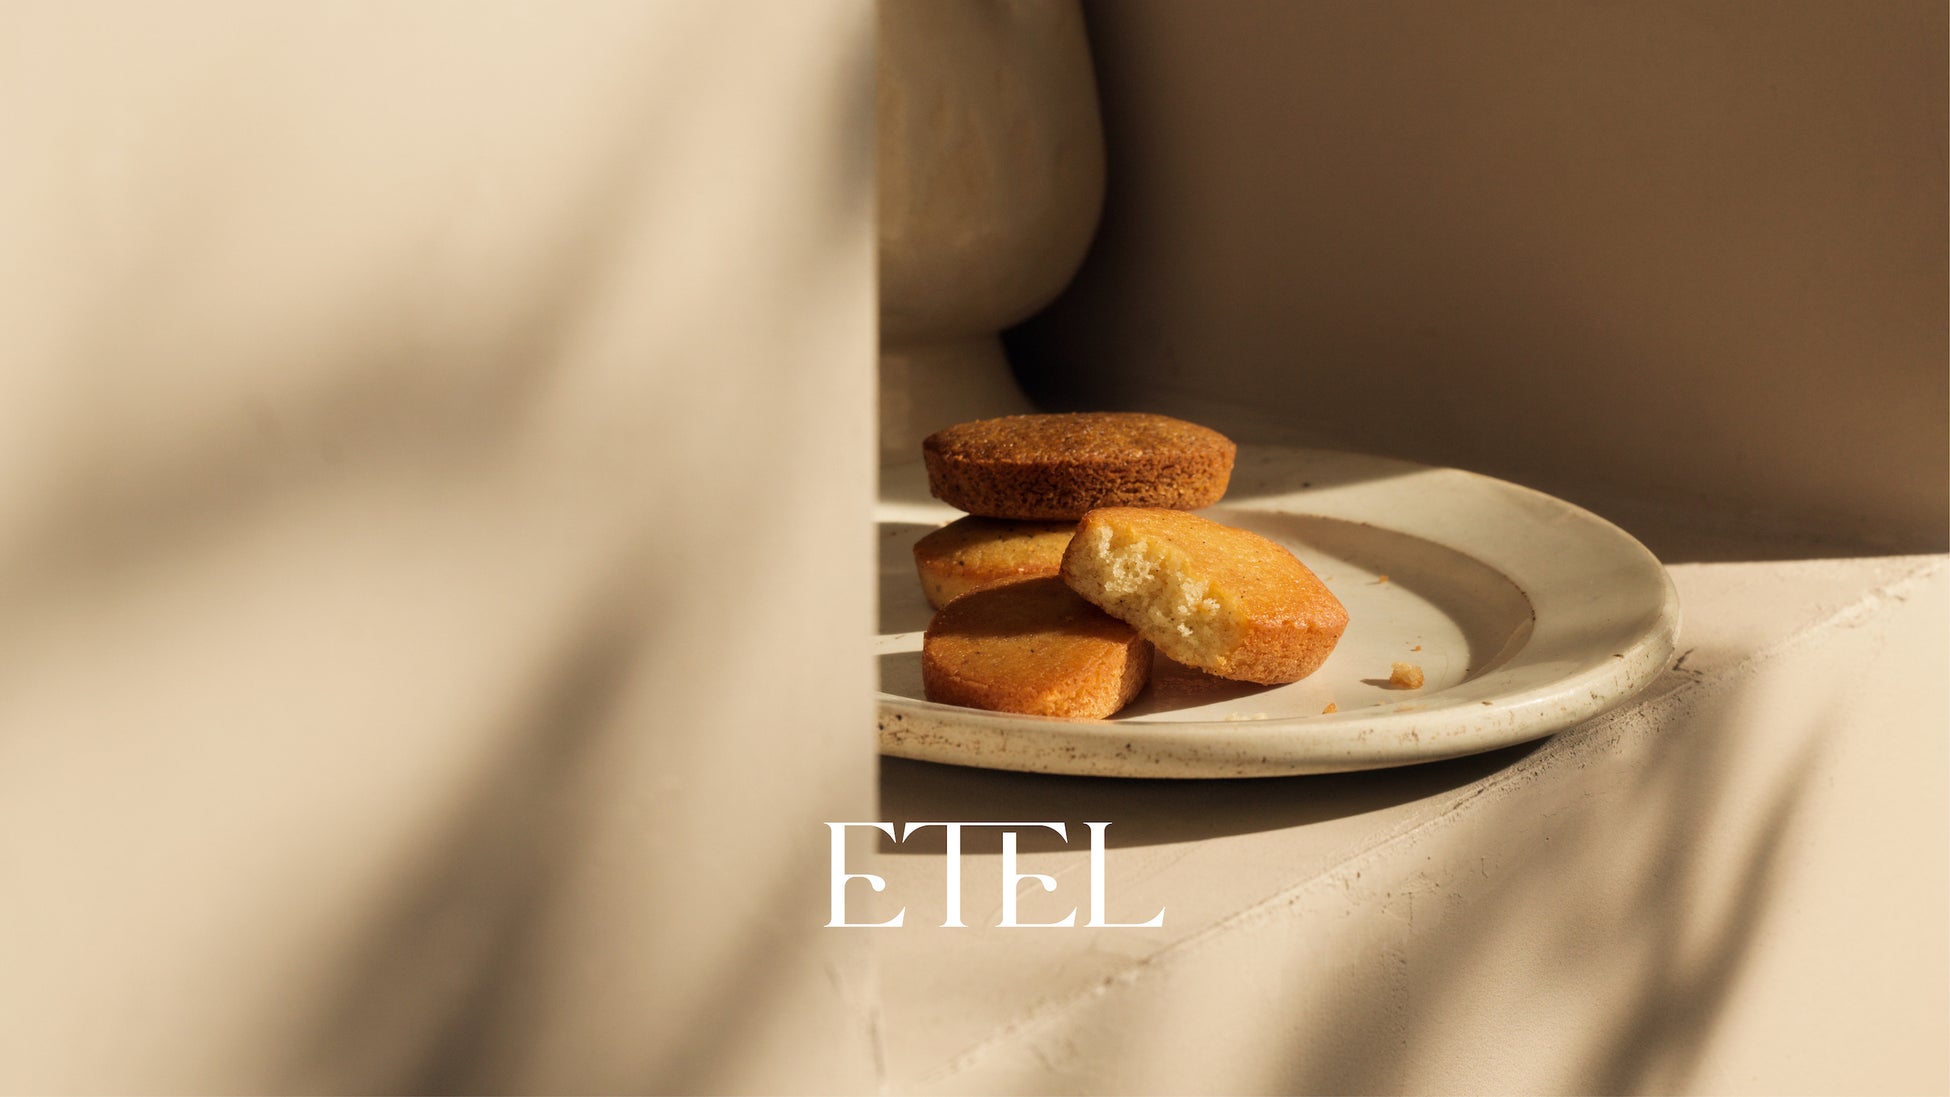 オンライン限定販売の焼き菓子ブランド「ETEL」のフィナンシェが12月1日より「Mr. CHEESECAKE LIMITED STORE 麻布台ヒルズ店」に登場